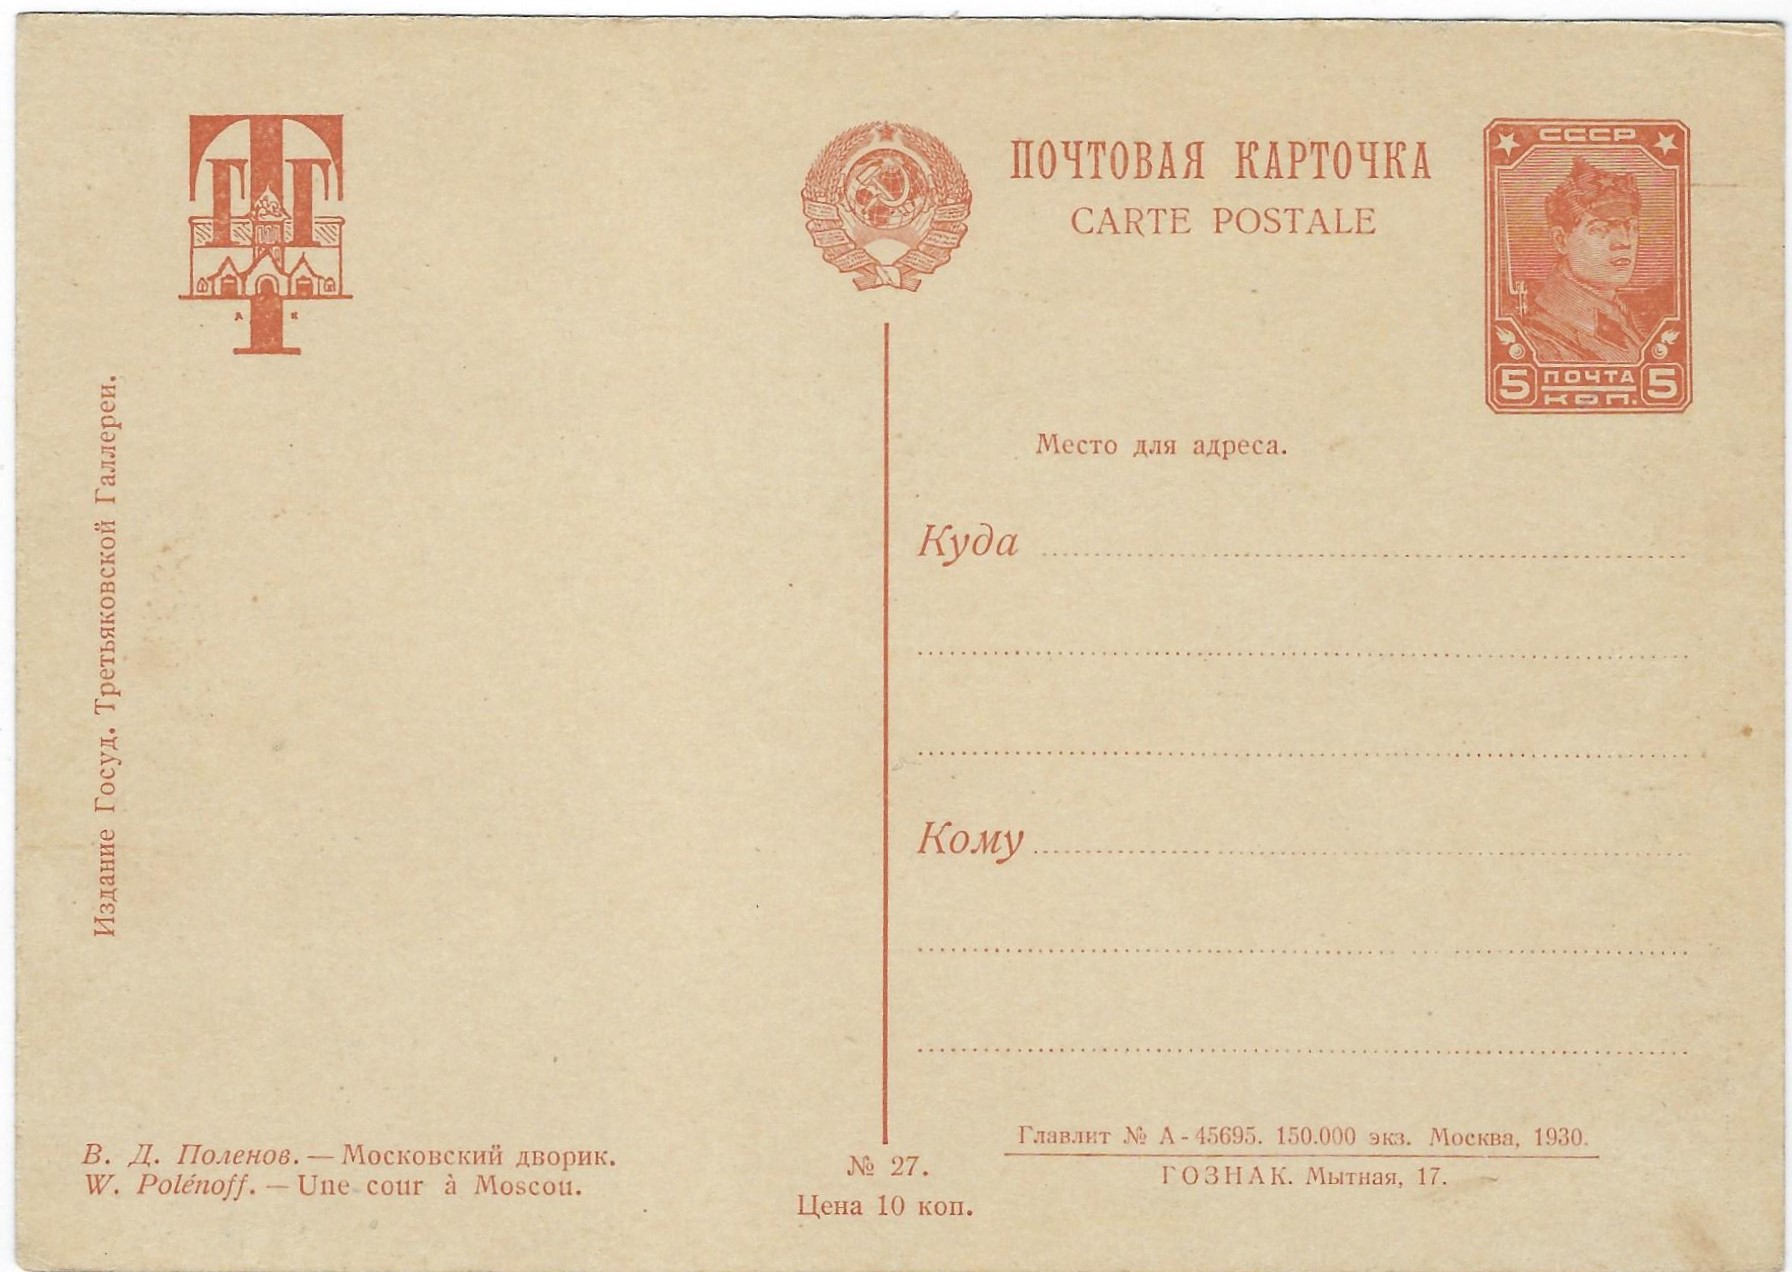 Postal Stationery - Soviet Union Tretiakov Gallery issue Scott 2700a 